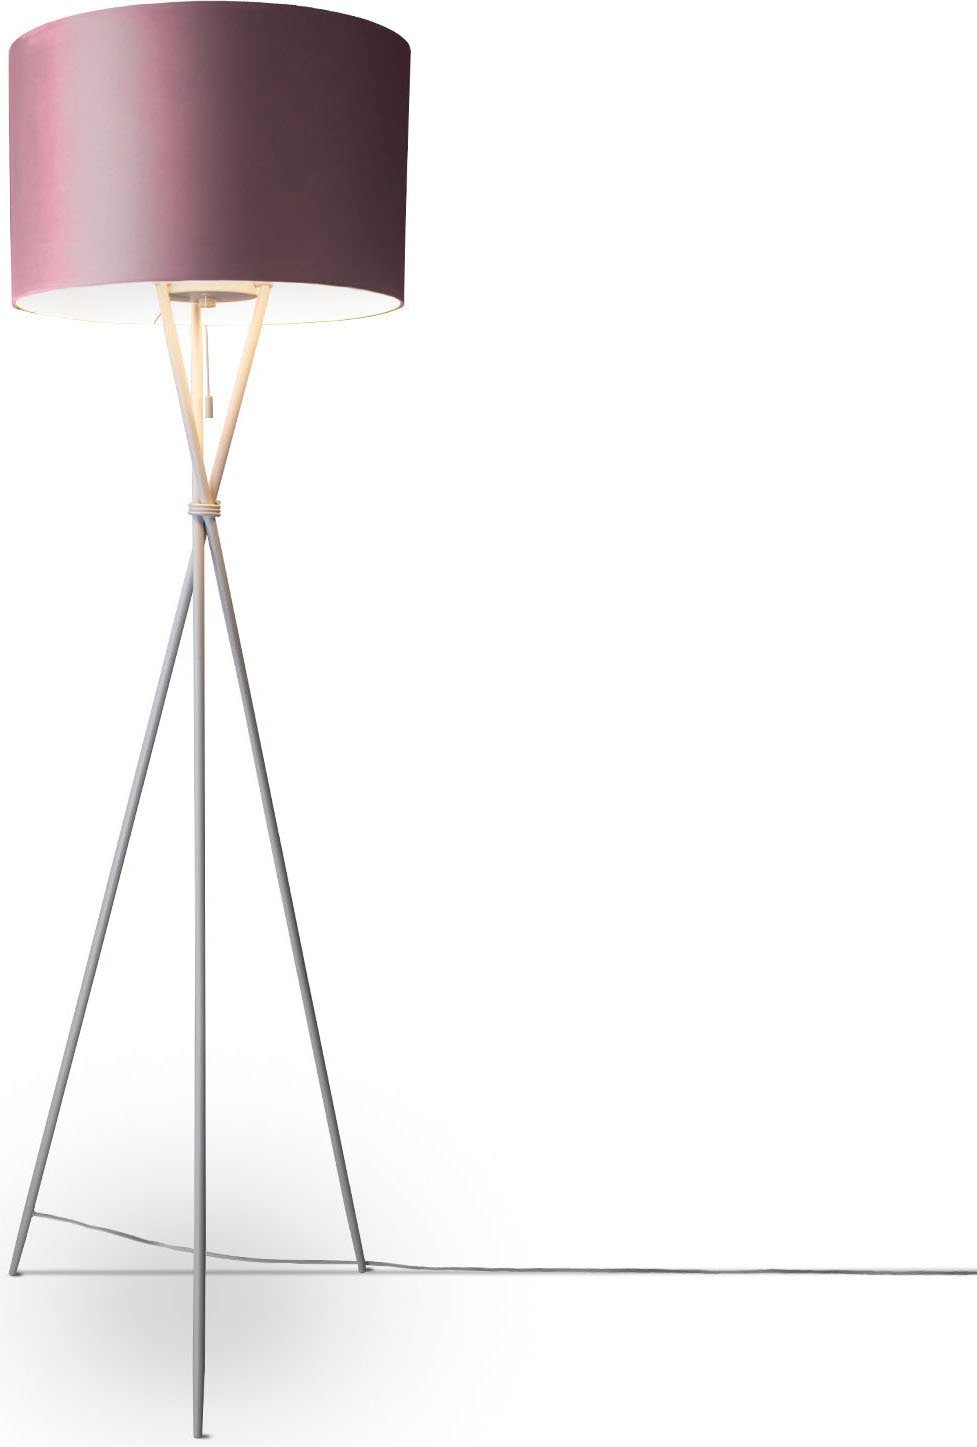 Paco Home Stehlampe Kate uni Color, ohne Leuchtmittel, Wohnzimmer Dreibein Standleuchte Velour Höhe 177,5cm Filigran E27 pink